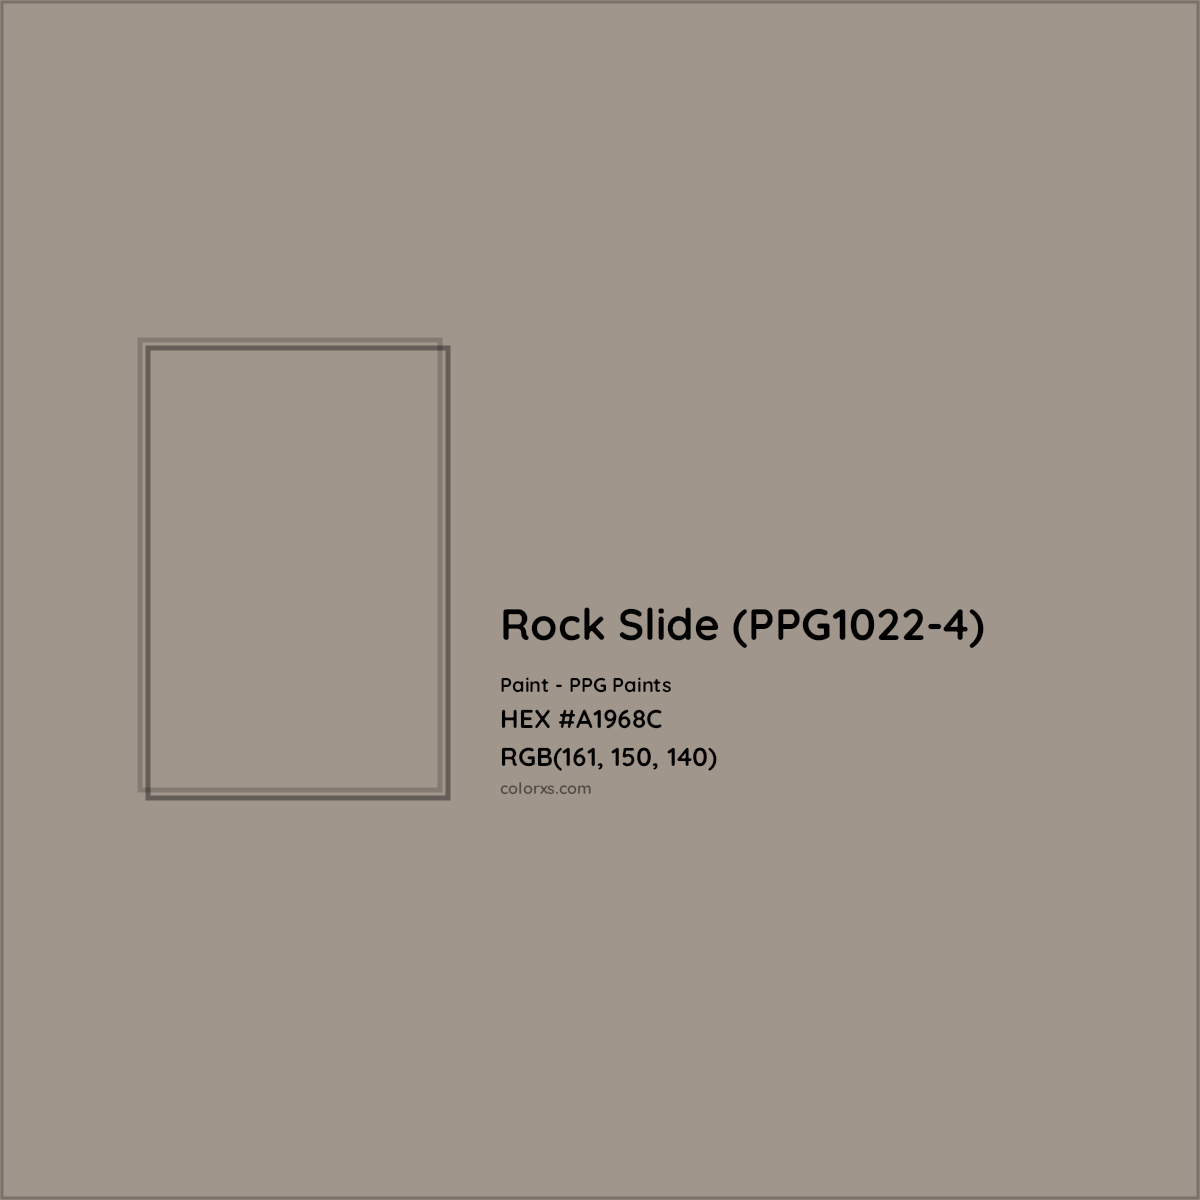 HEX #A1968C Rock Slide (PPG1022-4) Paint PPG Paints - Color Code